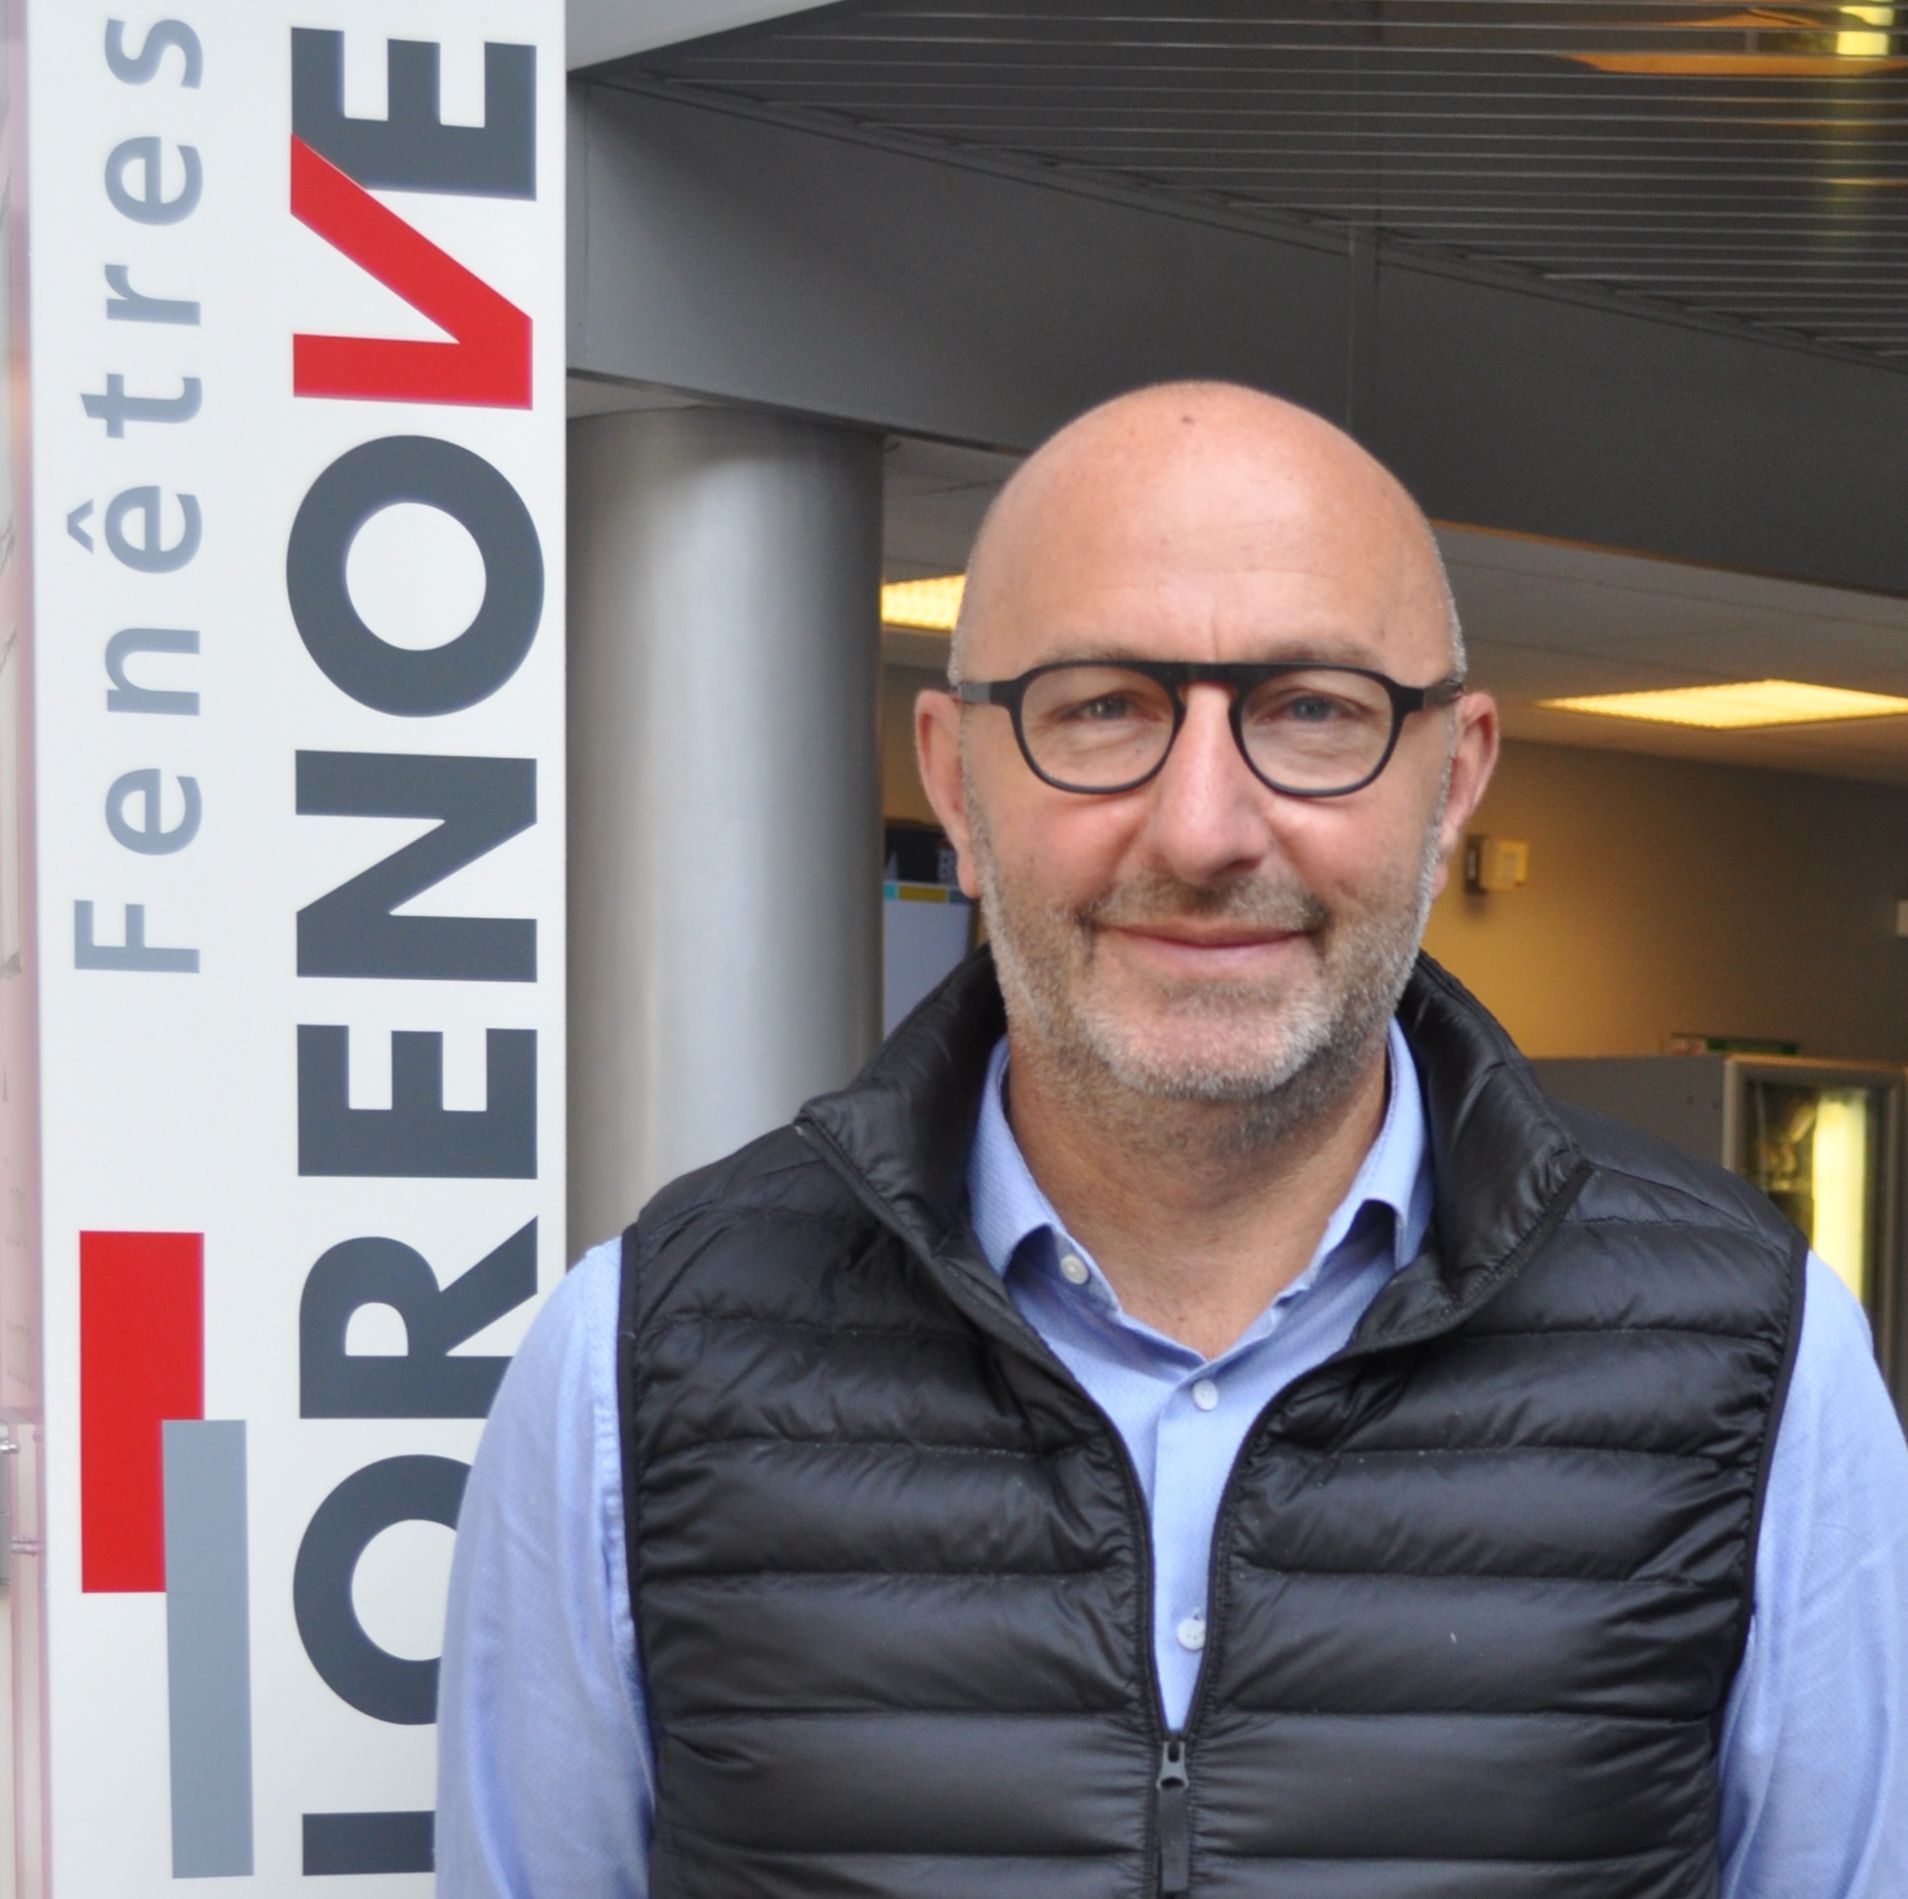 Franck Vandenberghe est nommé Directeur du réseau Lorenove Agences Intégrées et Concessions